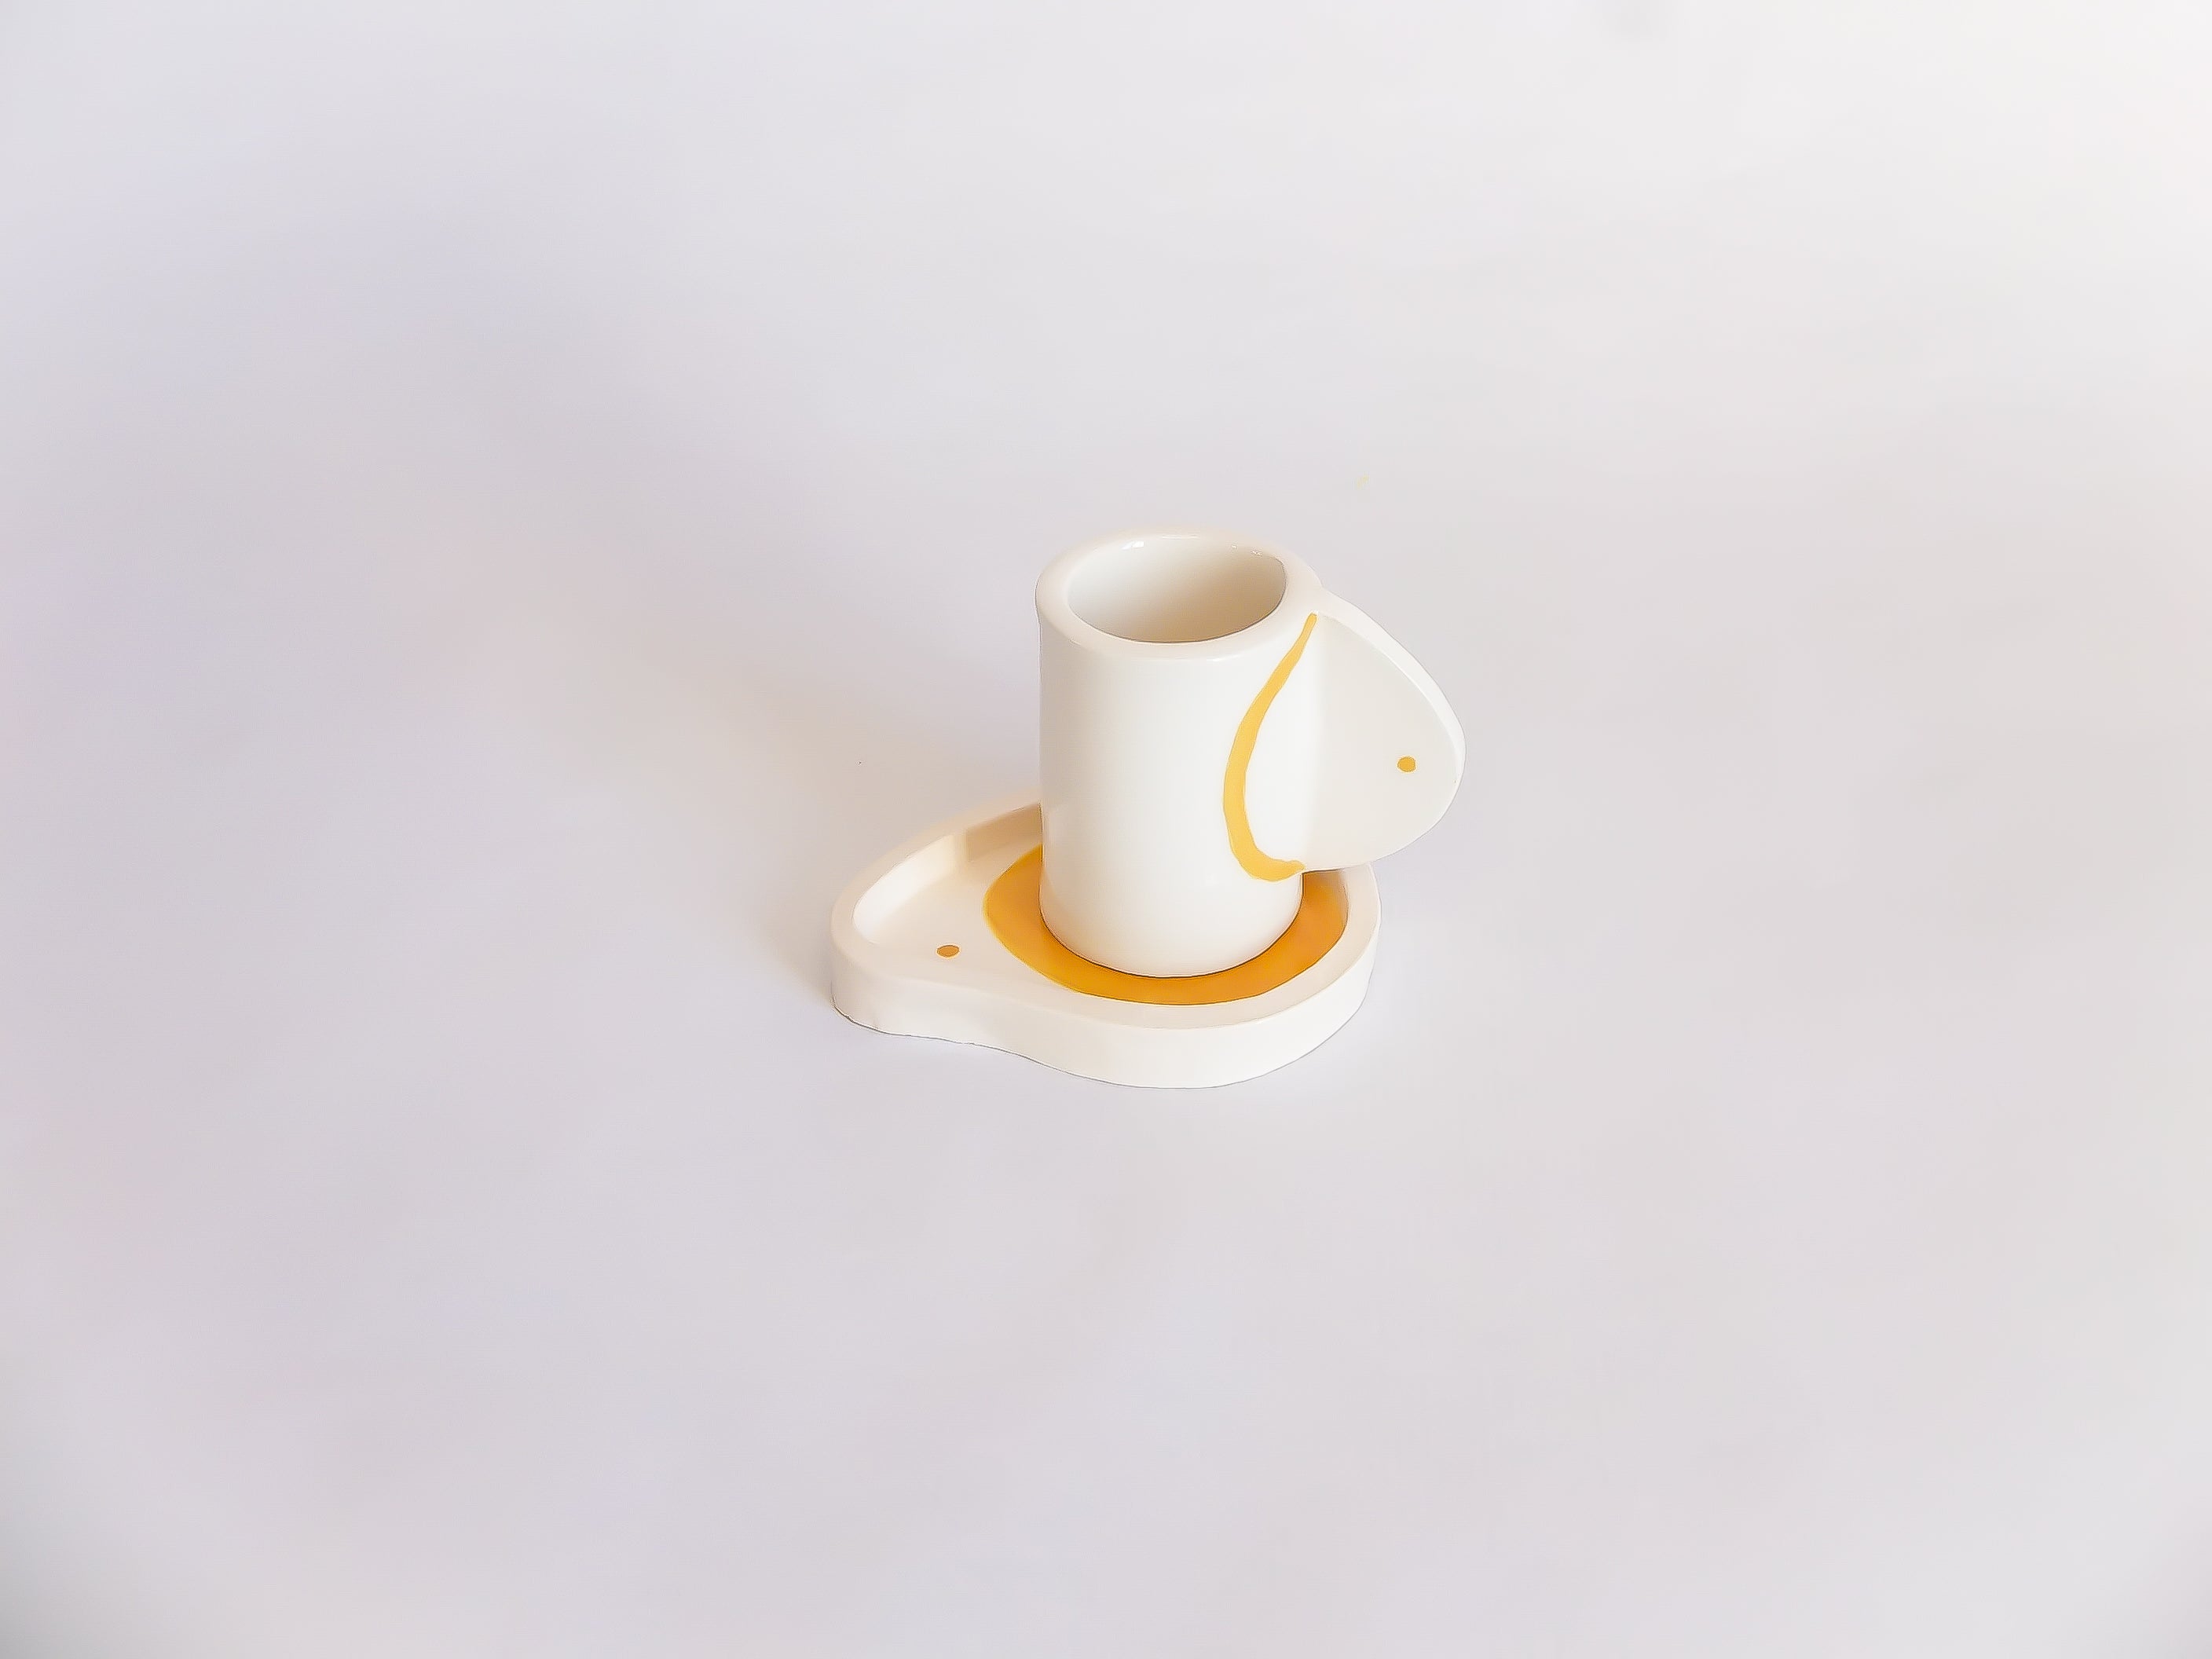 Petite tasse à café et coupelle jaunes fabriquées et peintes à la main au Portugal